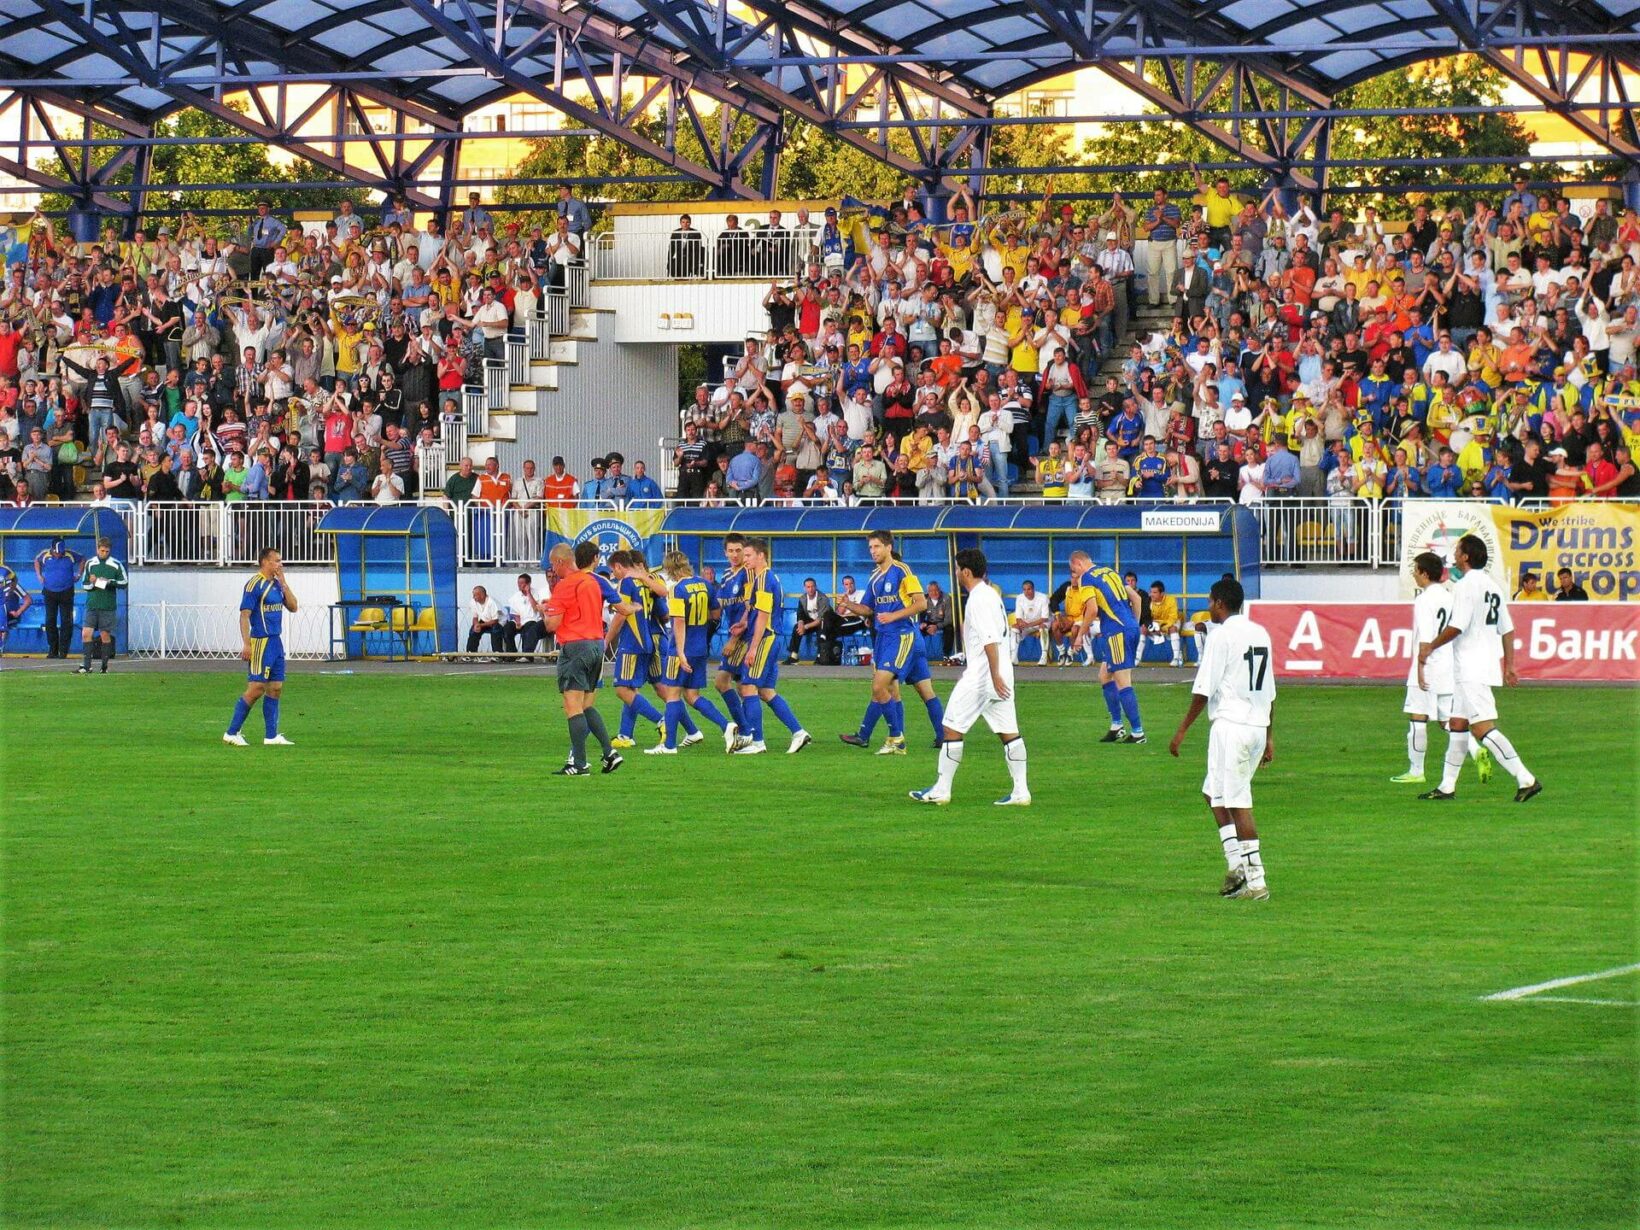 Bate borisov stadium, during football game in Belarus